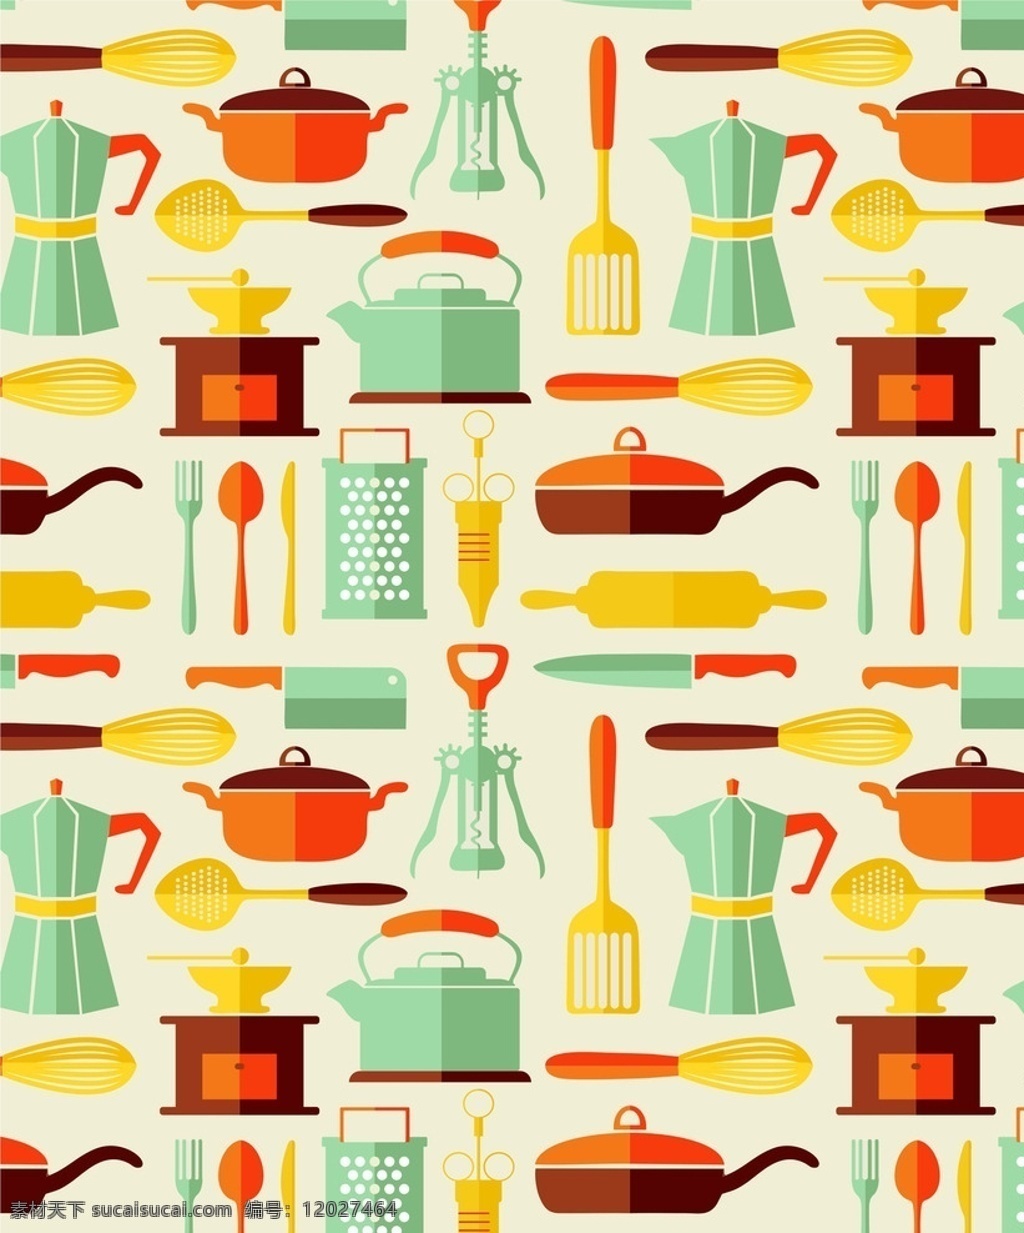 餐具图案 厨房用品图标 刀叉 锅 勺子 厨房用具 矢量图案 渐变图案 简单图形 餐具图形 底纹边框 花边花纹